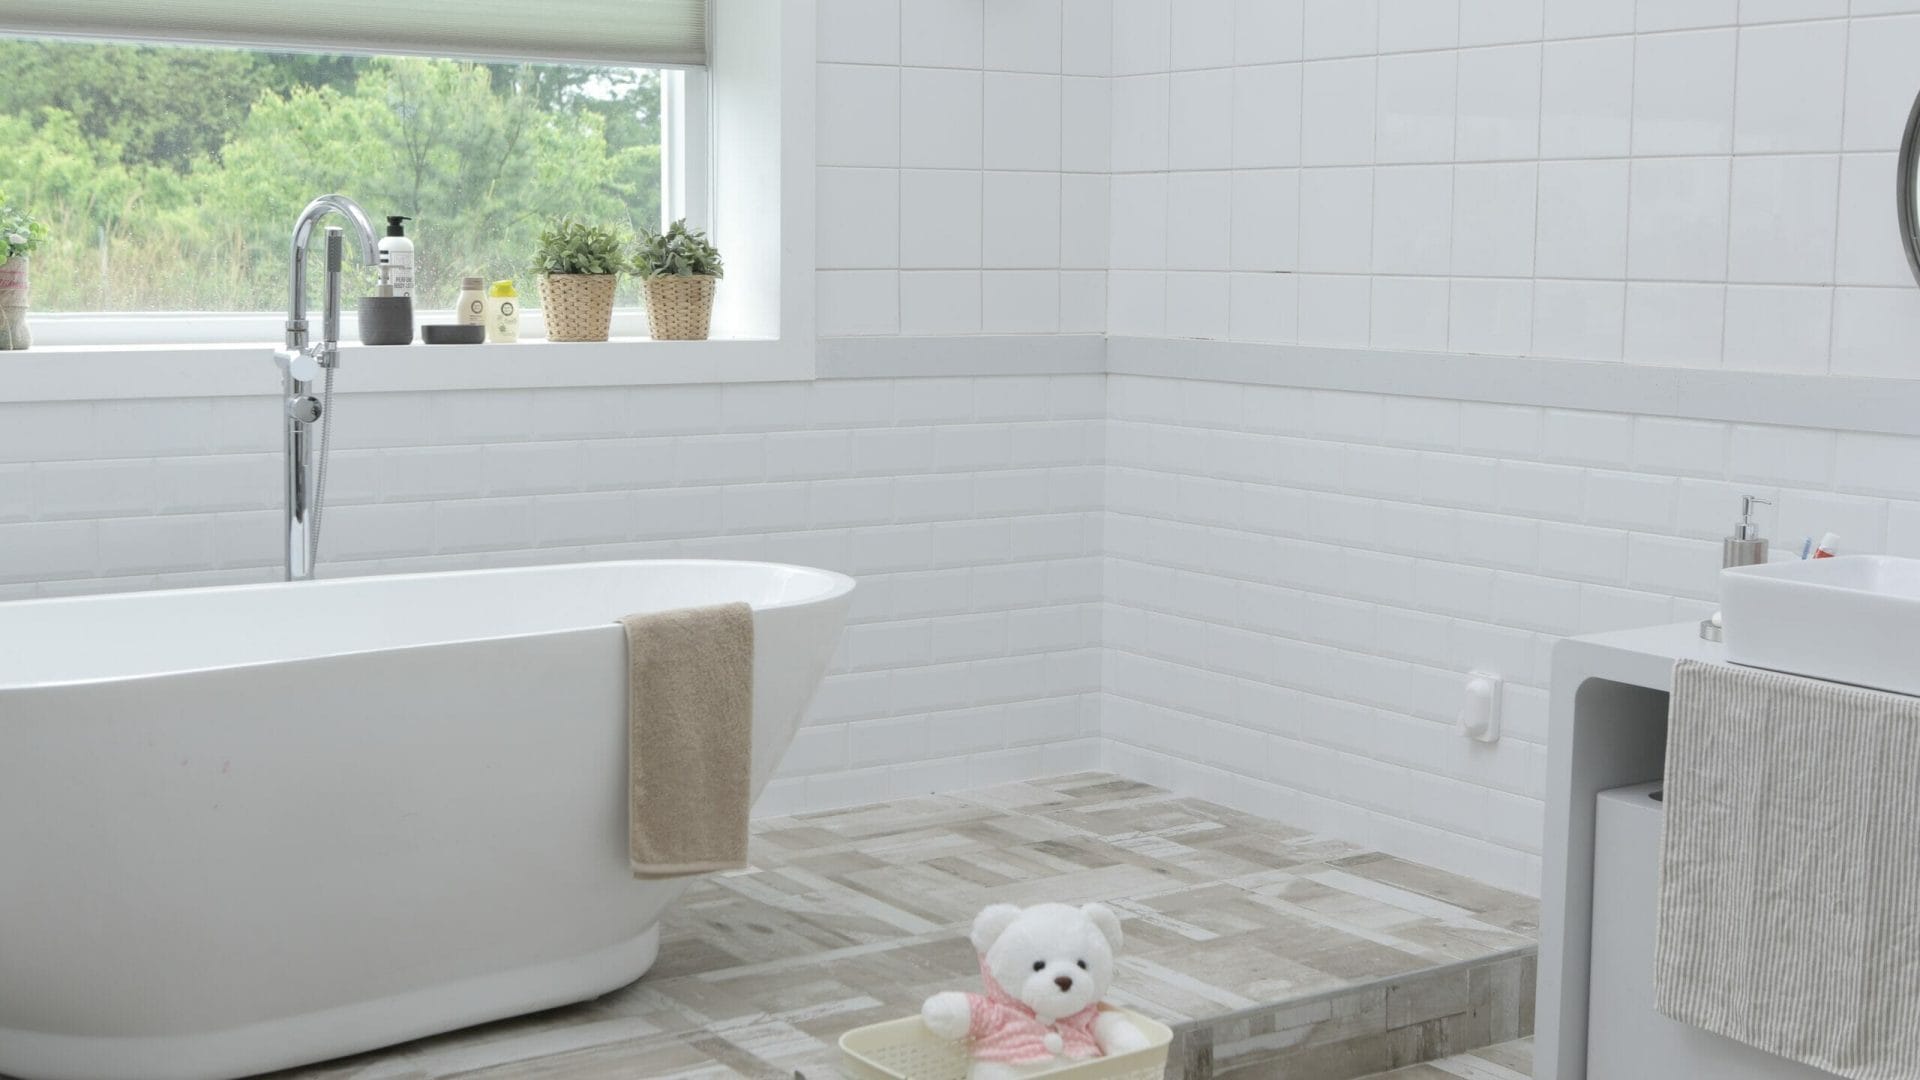 Posizionare la vasca o la doccia in fondo alla stanza è un ottimo modo per proporzionare bene gli spazi.